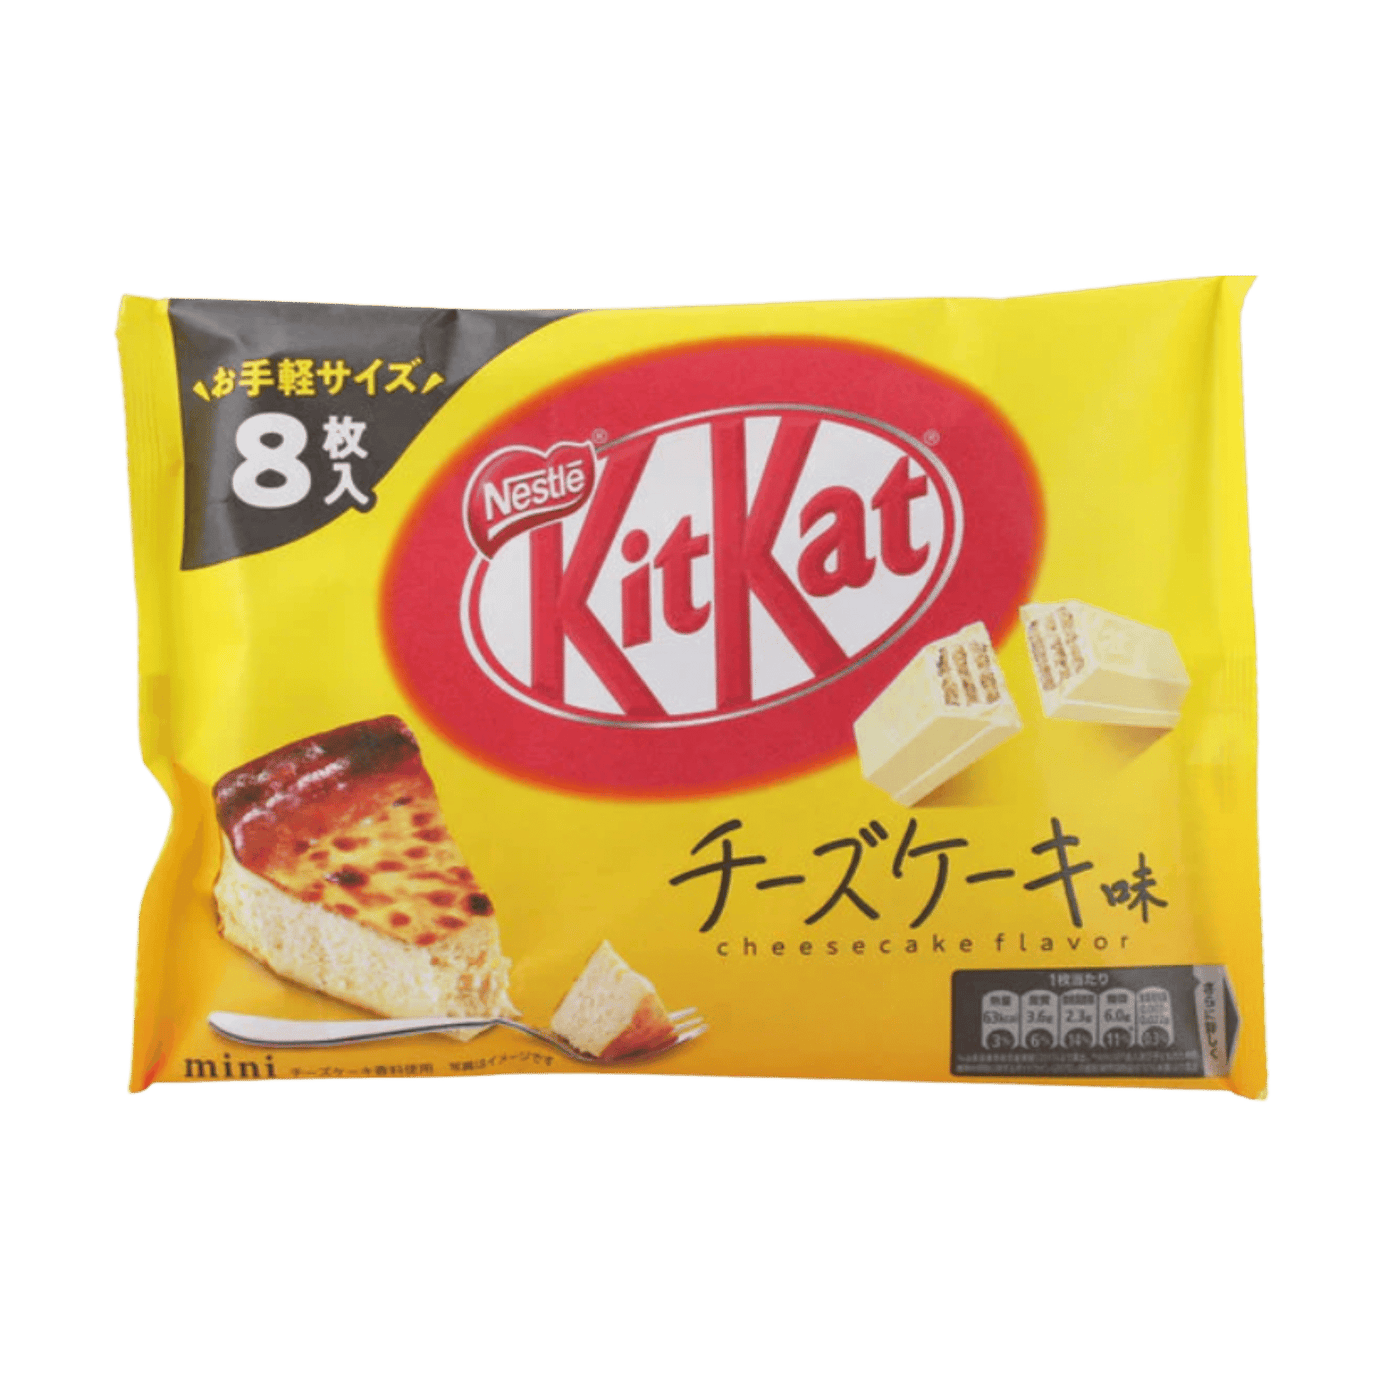 Kit Kat Mini in bags - Japan